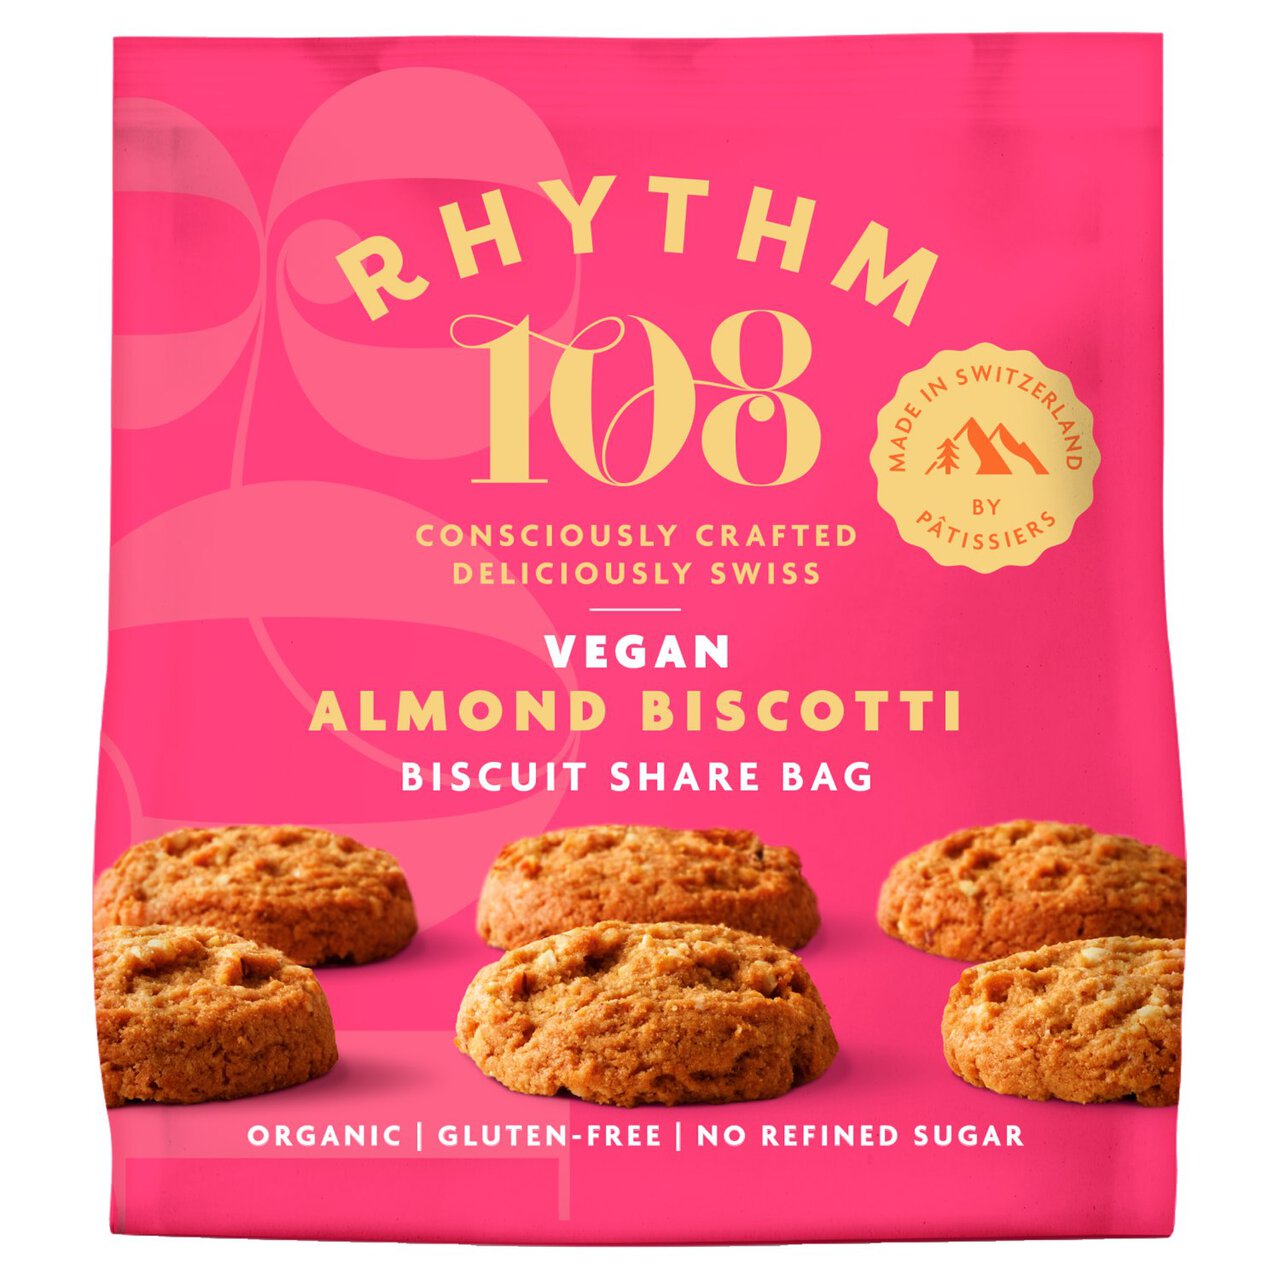 Rhythm 108 Swiss Vegan Almond Biscotti Biscuit Share Bag 135g 135g